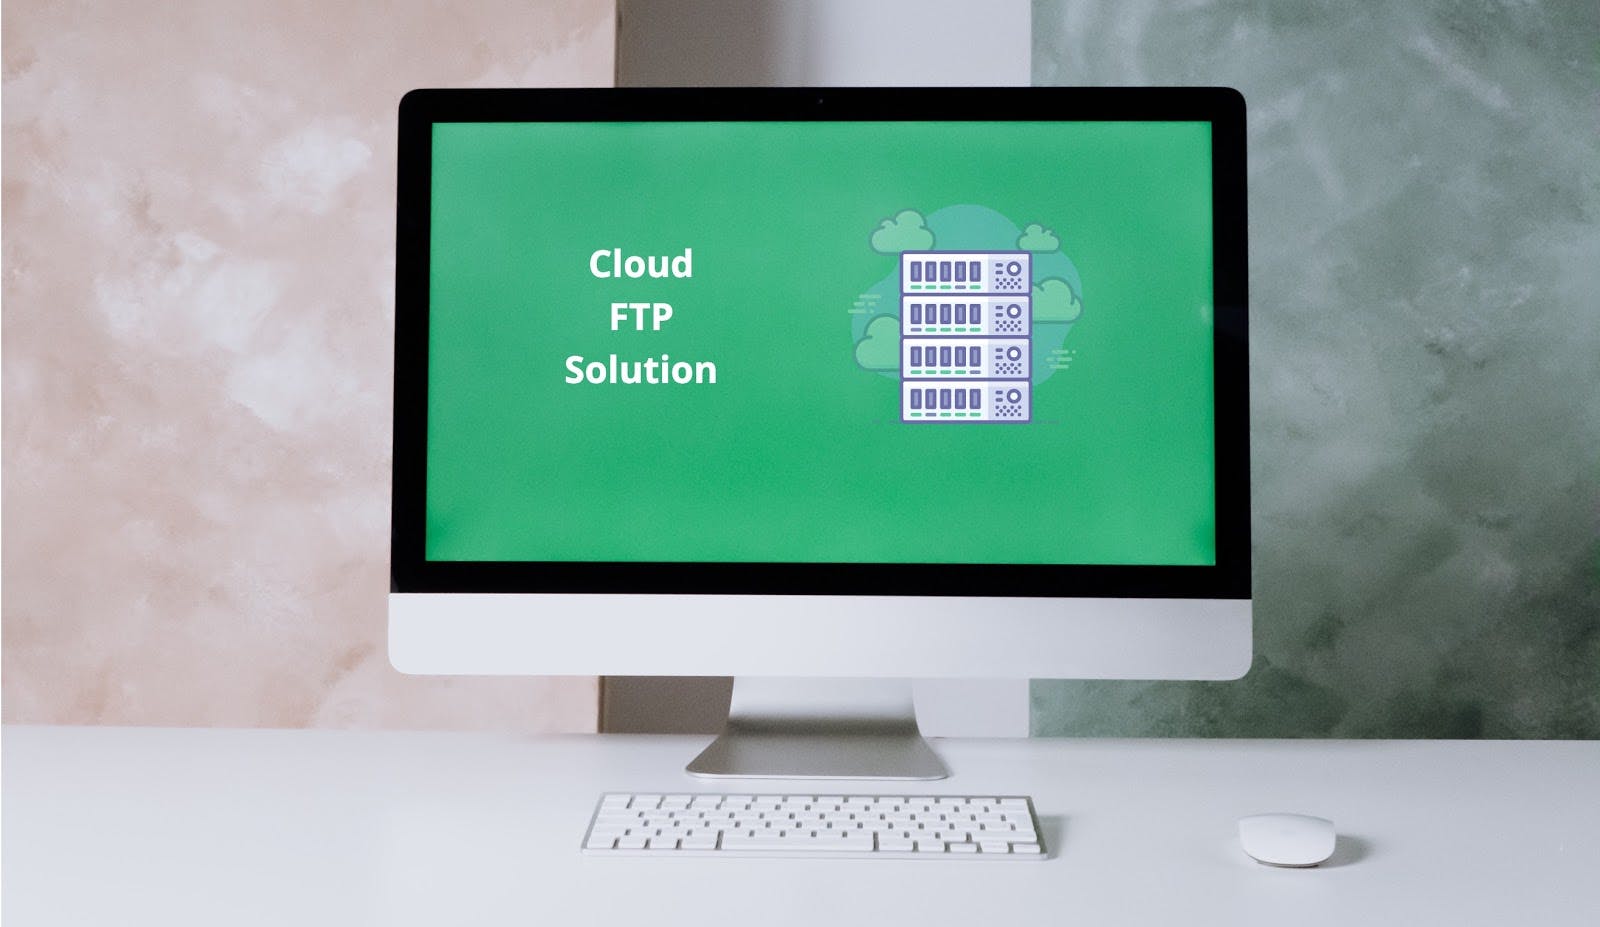 Cloud FTP solution.